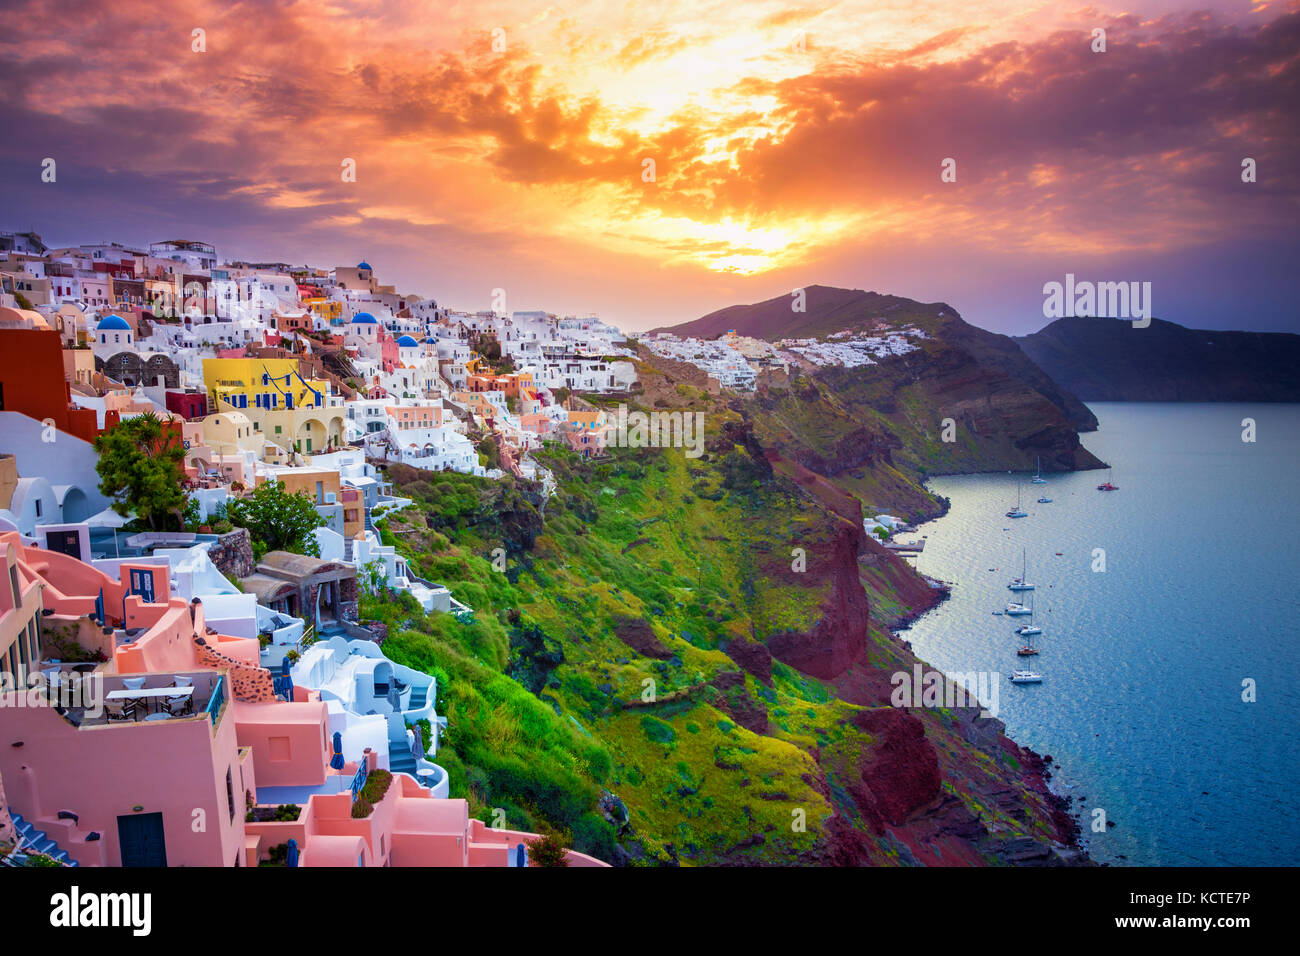 Oia sur l'île de Santorin, Grèce. et traditionnel célèbres maisons et églises aux dômes bleus sur la caldeira, la mer Égée Banque D'Images